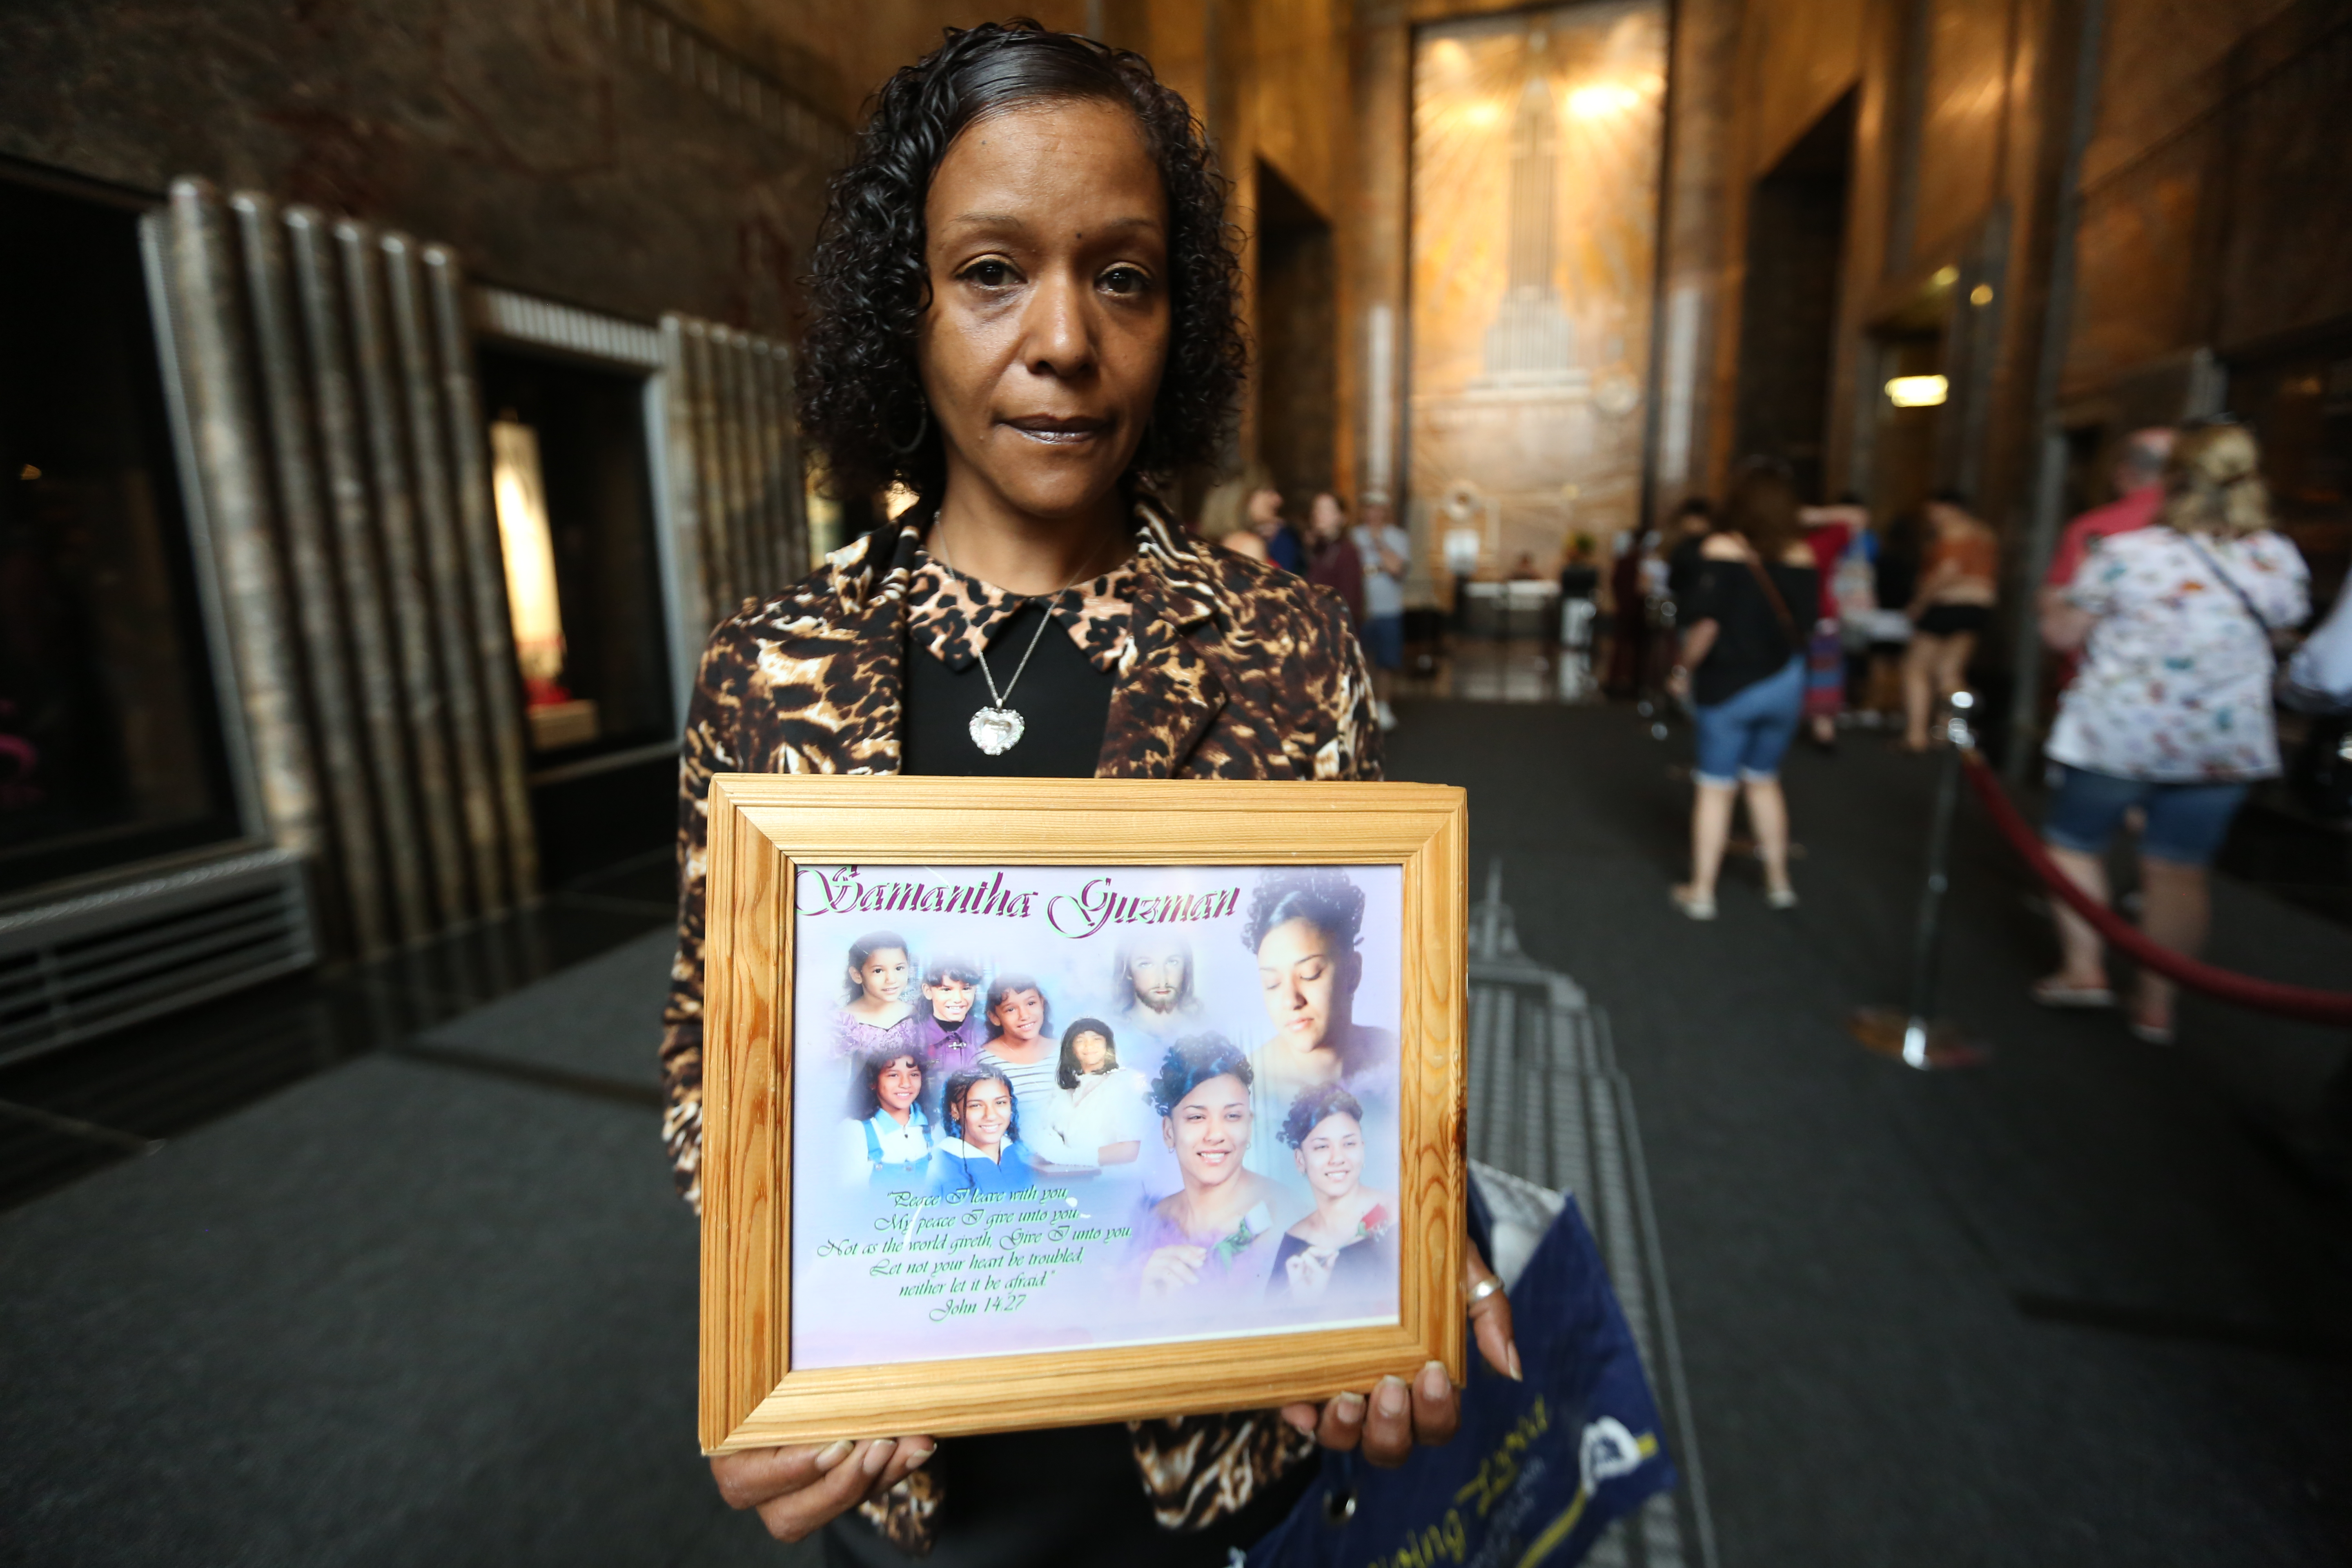 Diana Alvarado, perdio a su hija por violencia de armas en el2006 y hoy estaba en el Empire Estate Building para crear conciencia sobre la violencia de armas.